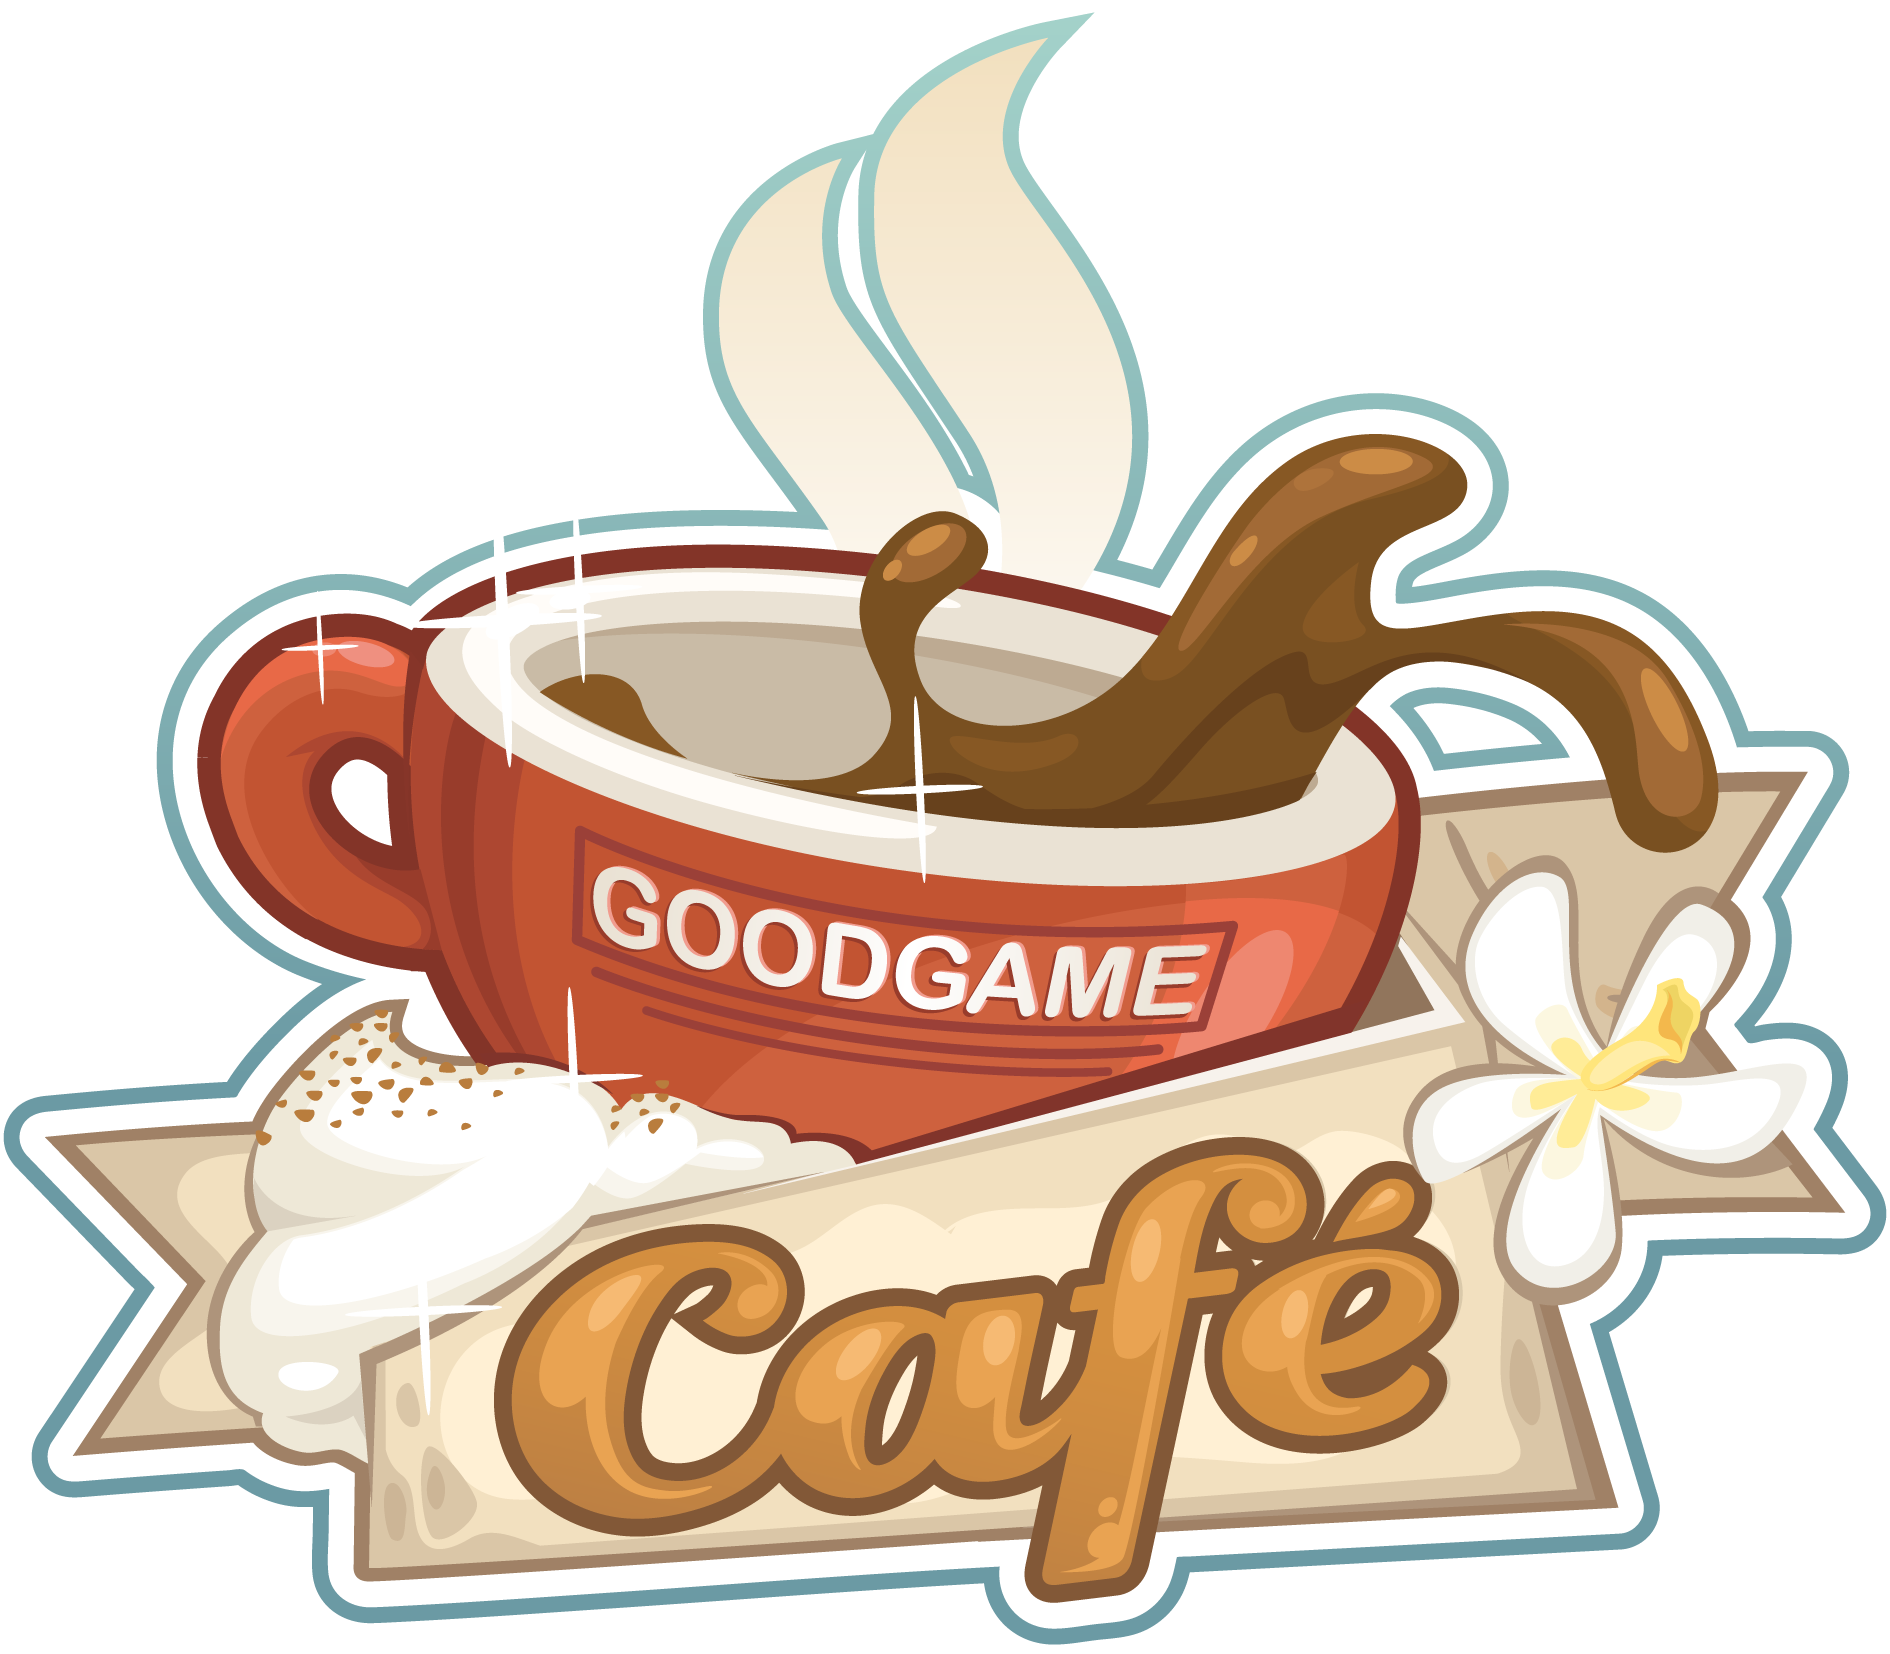 Goodgame Café